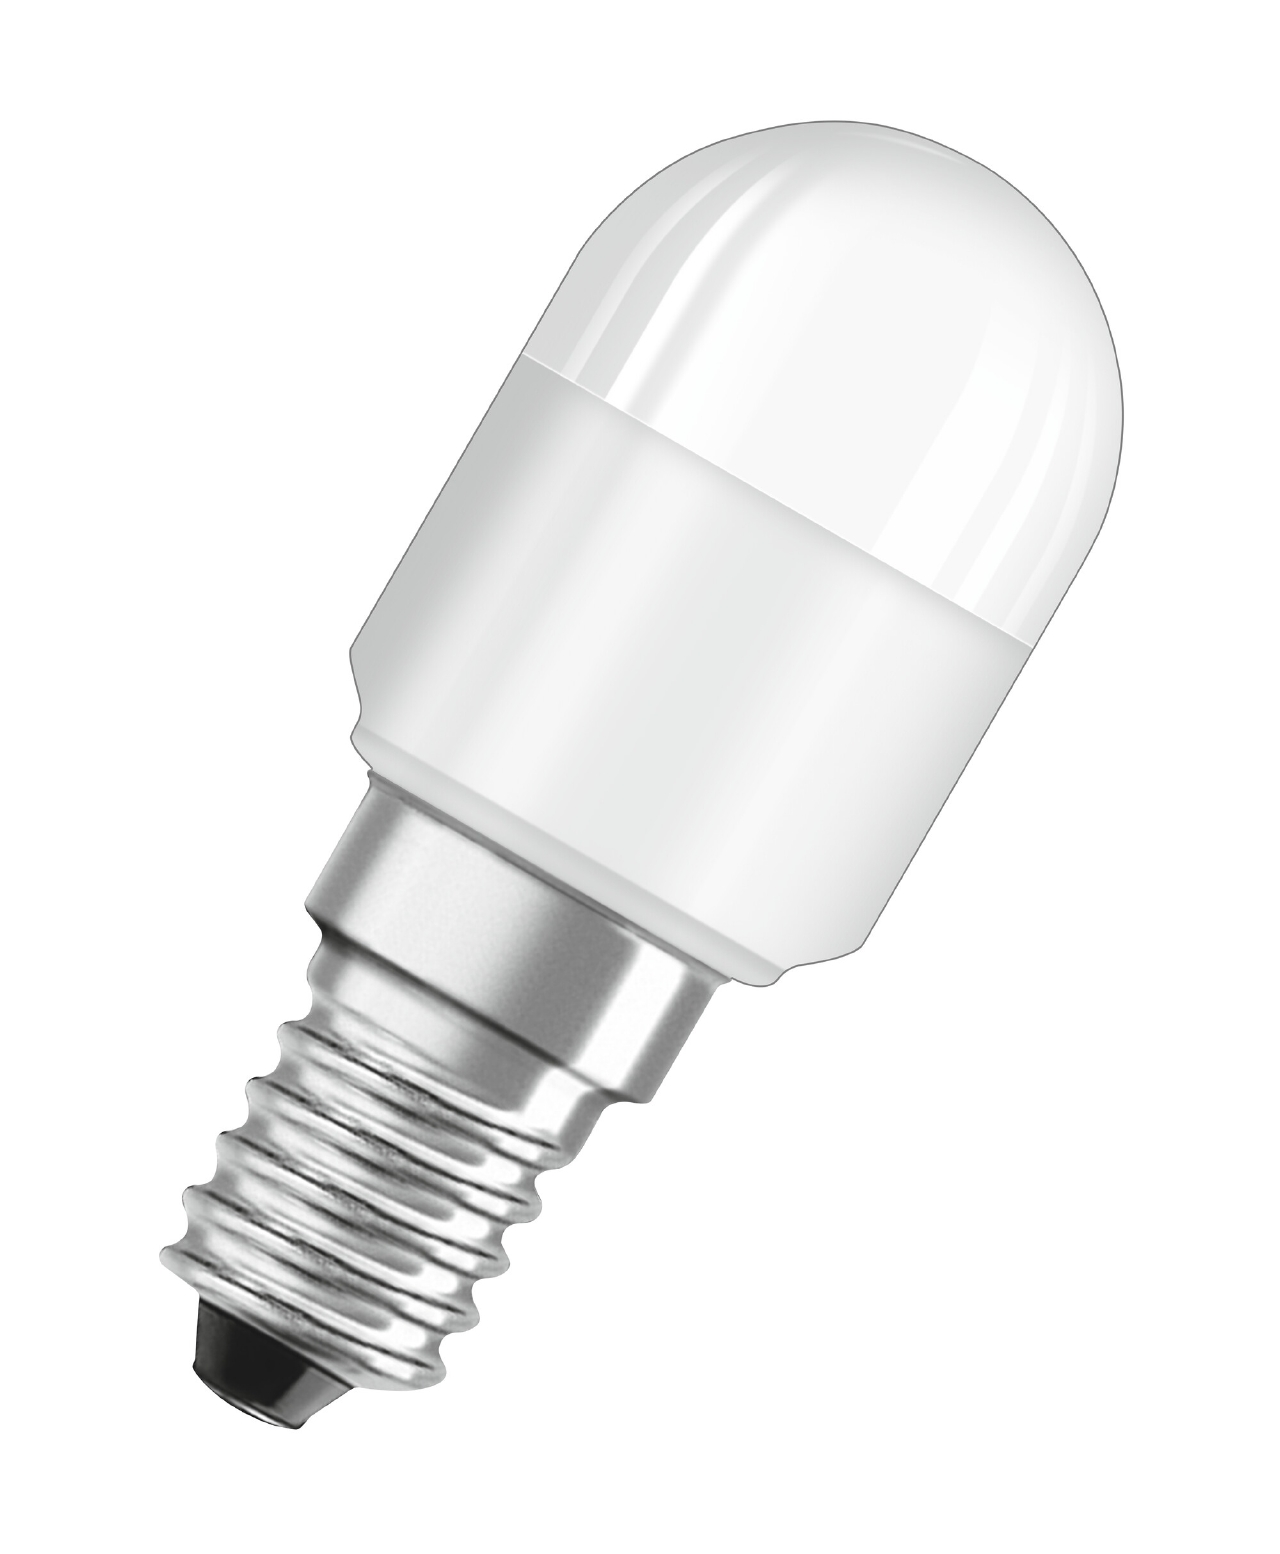 Ampoule LED sphérique dépolie E14 6.5 W - Philips